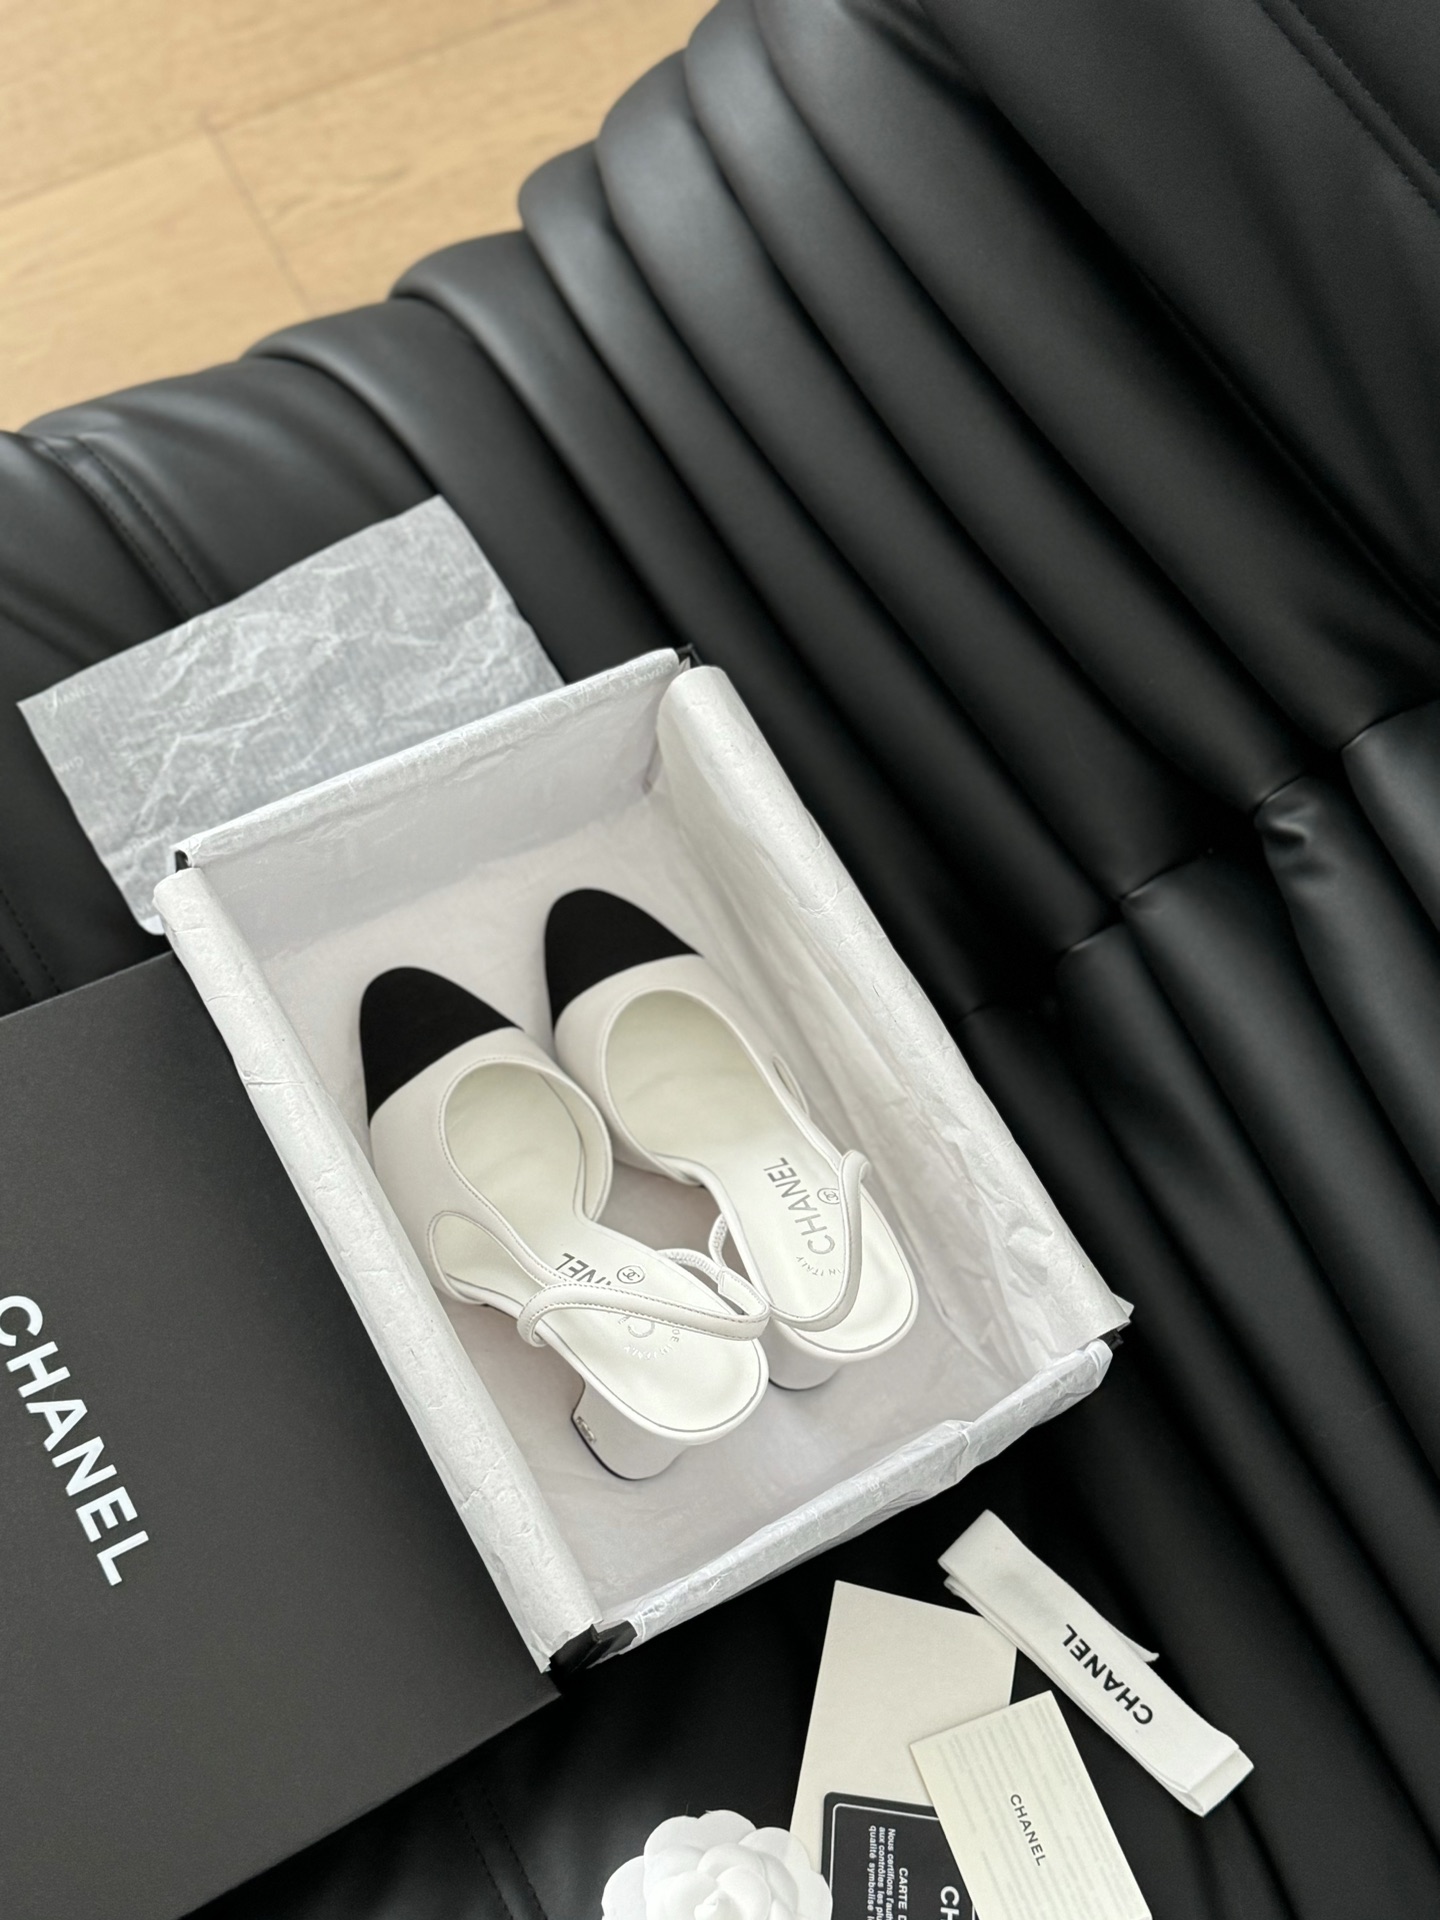 AAAA -Qualitätsreplik
 Chanel Schuhe Pumps Mit Hohem Absatz Sandalen Rindsleder Schaffell